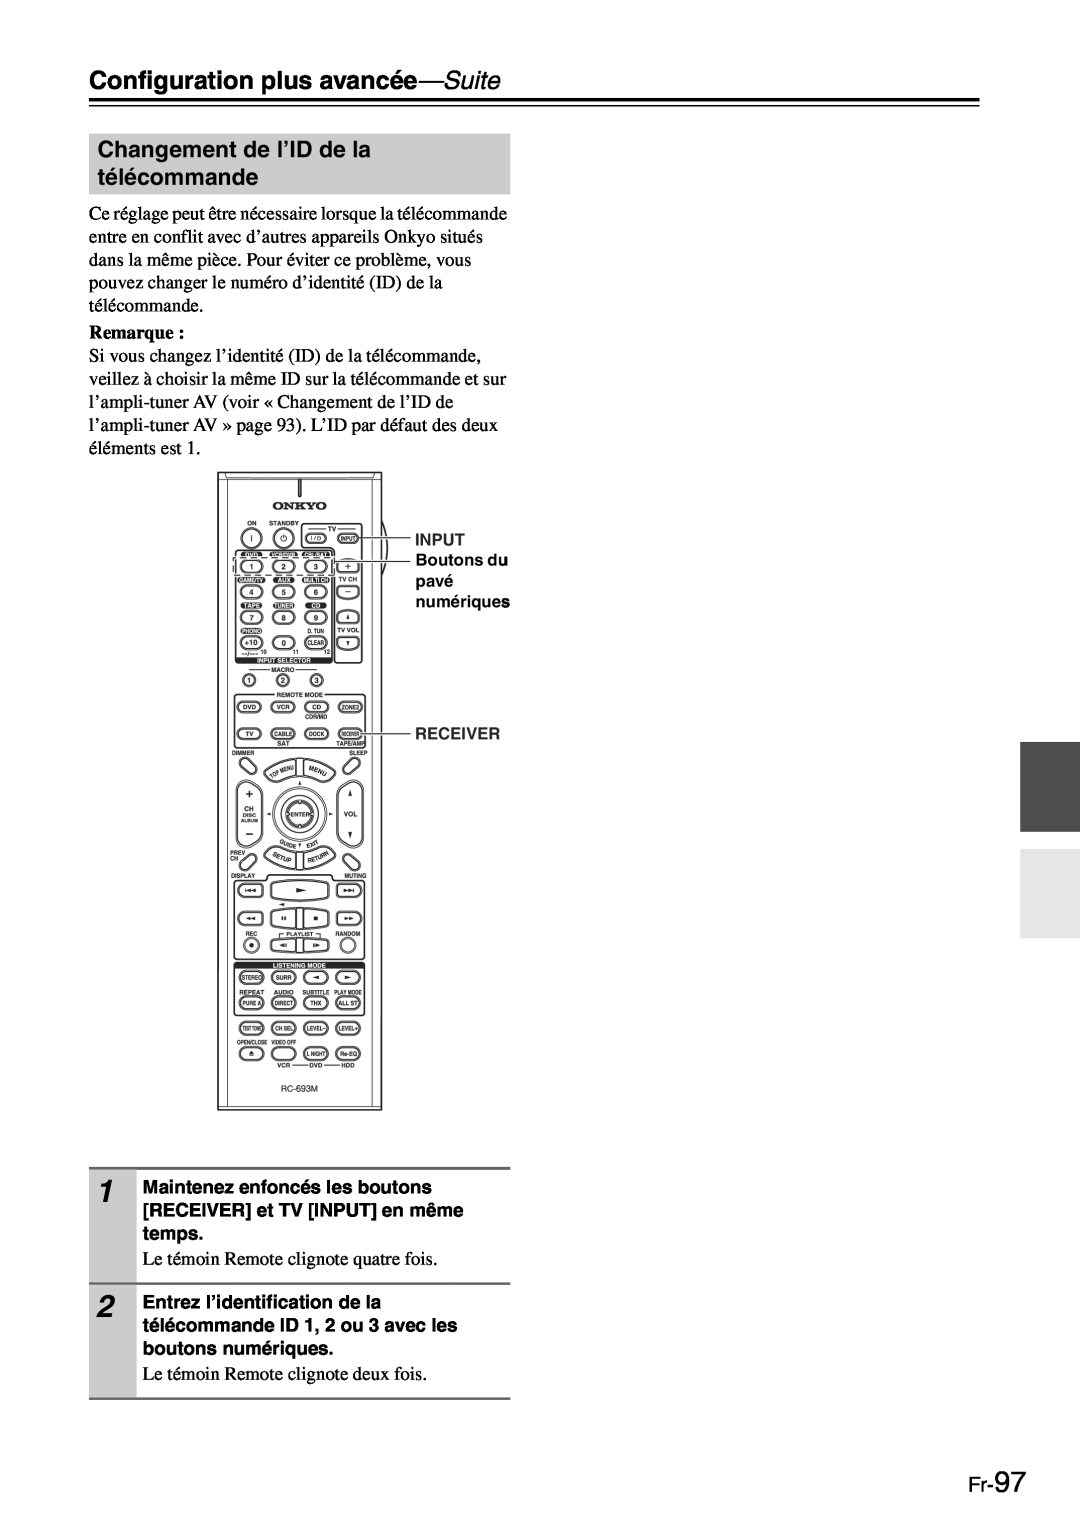 Onkyo TX-SR705 manual Changement de l’ID de la télécommande, Fr-97, Configuration plus avancée—Suite, Remarque 